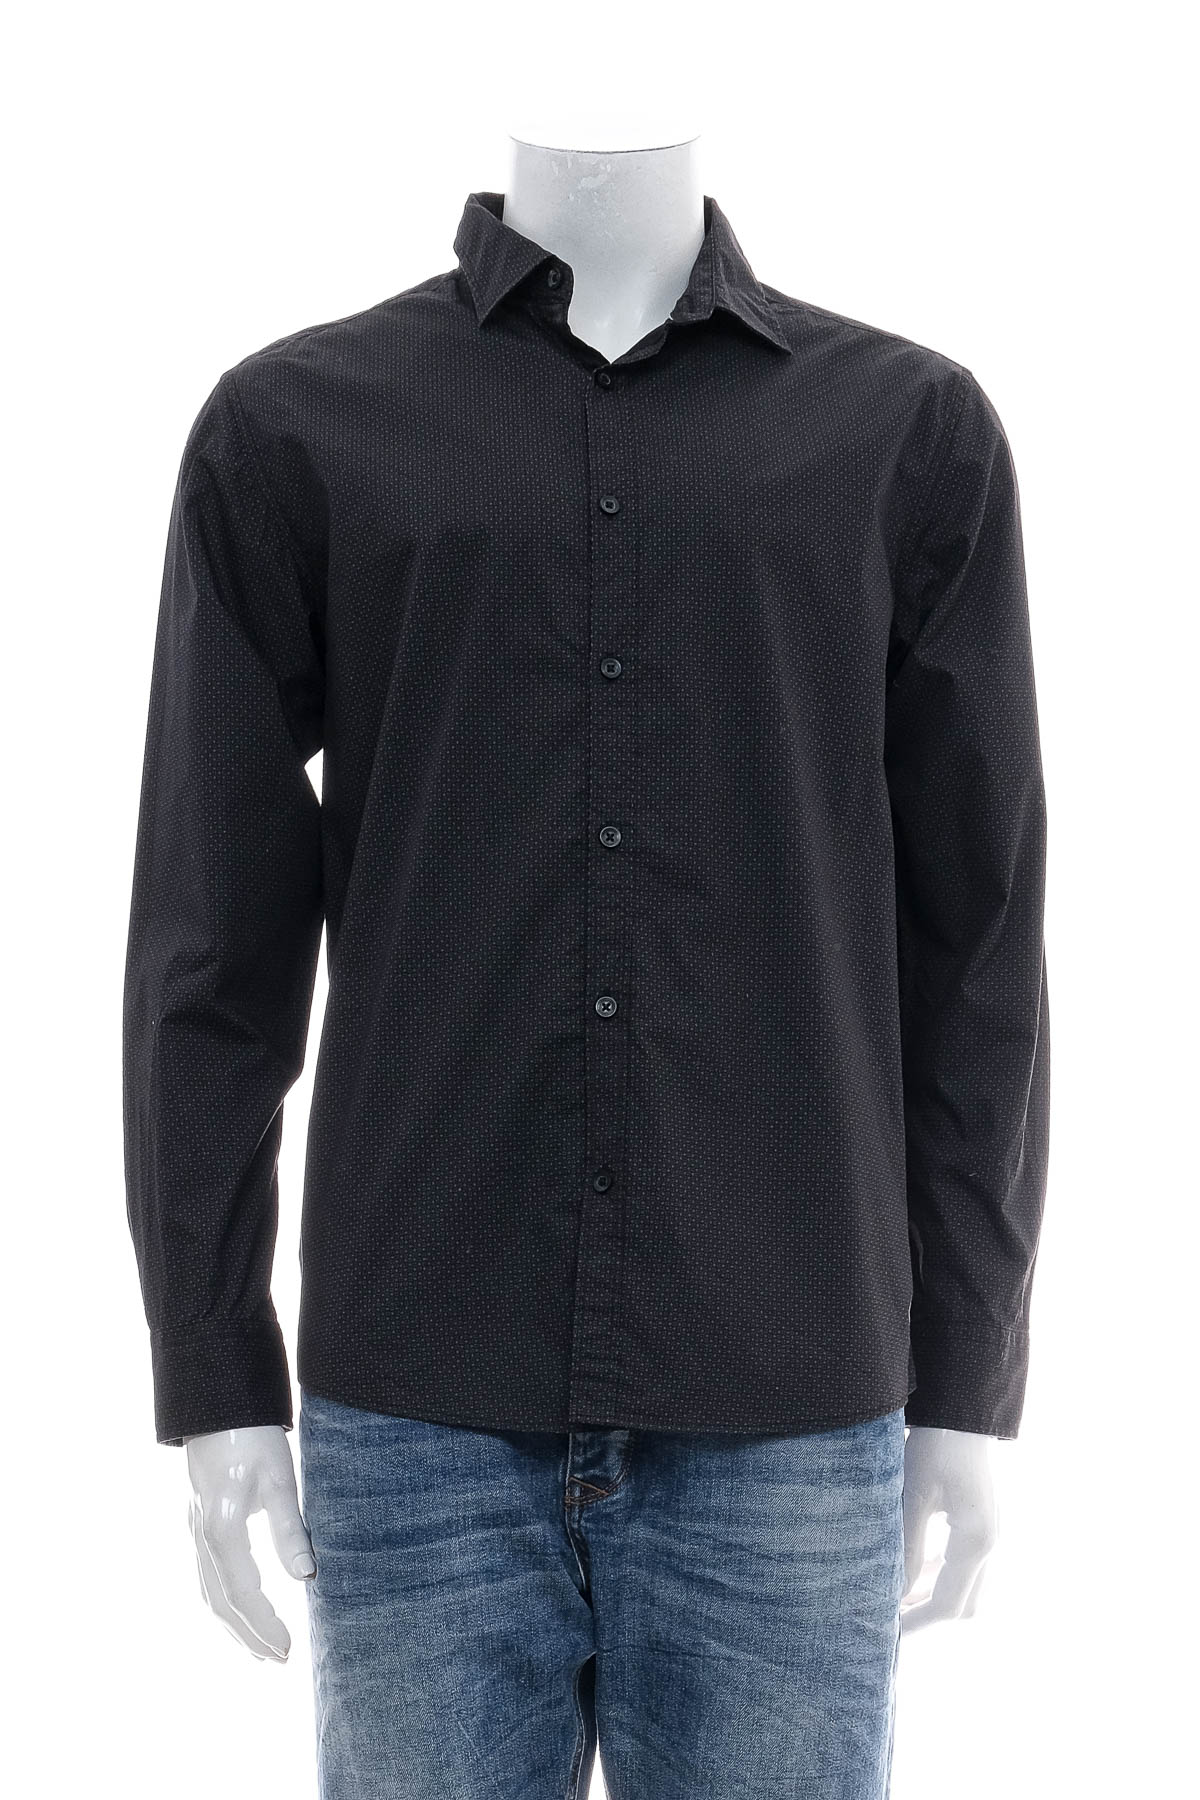 Ανδρικό πουκάμισο - Clothing & CO - 0